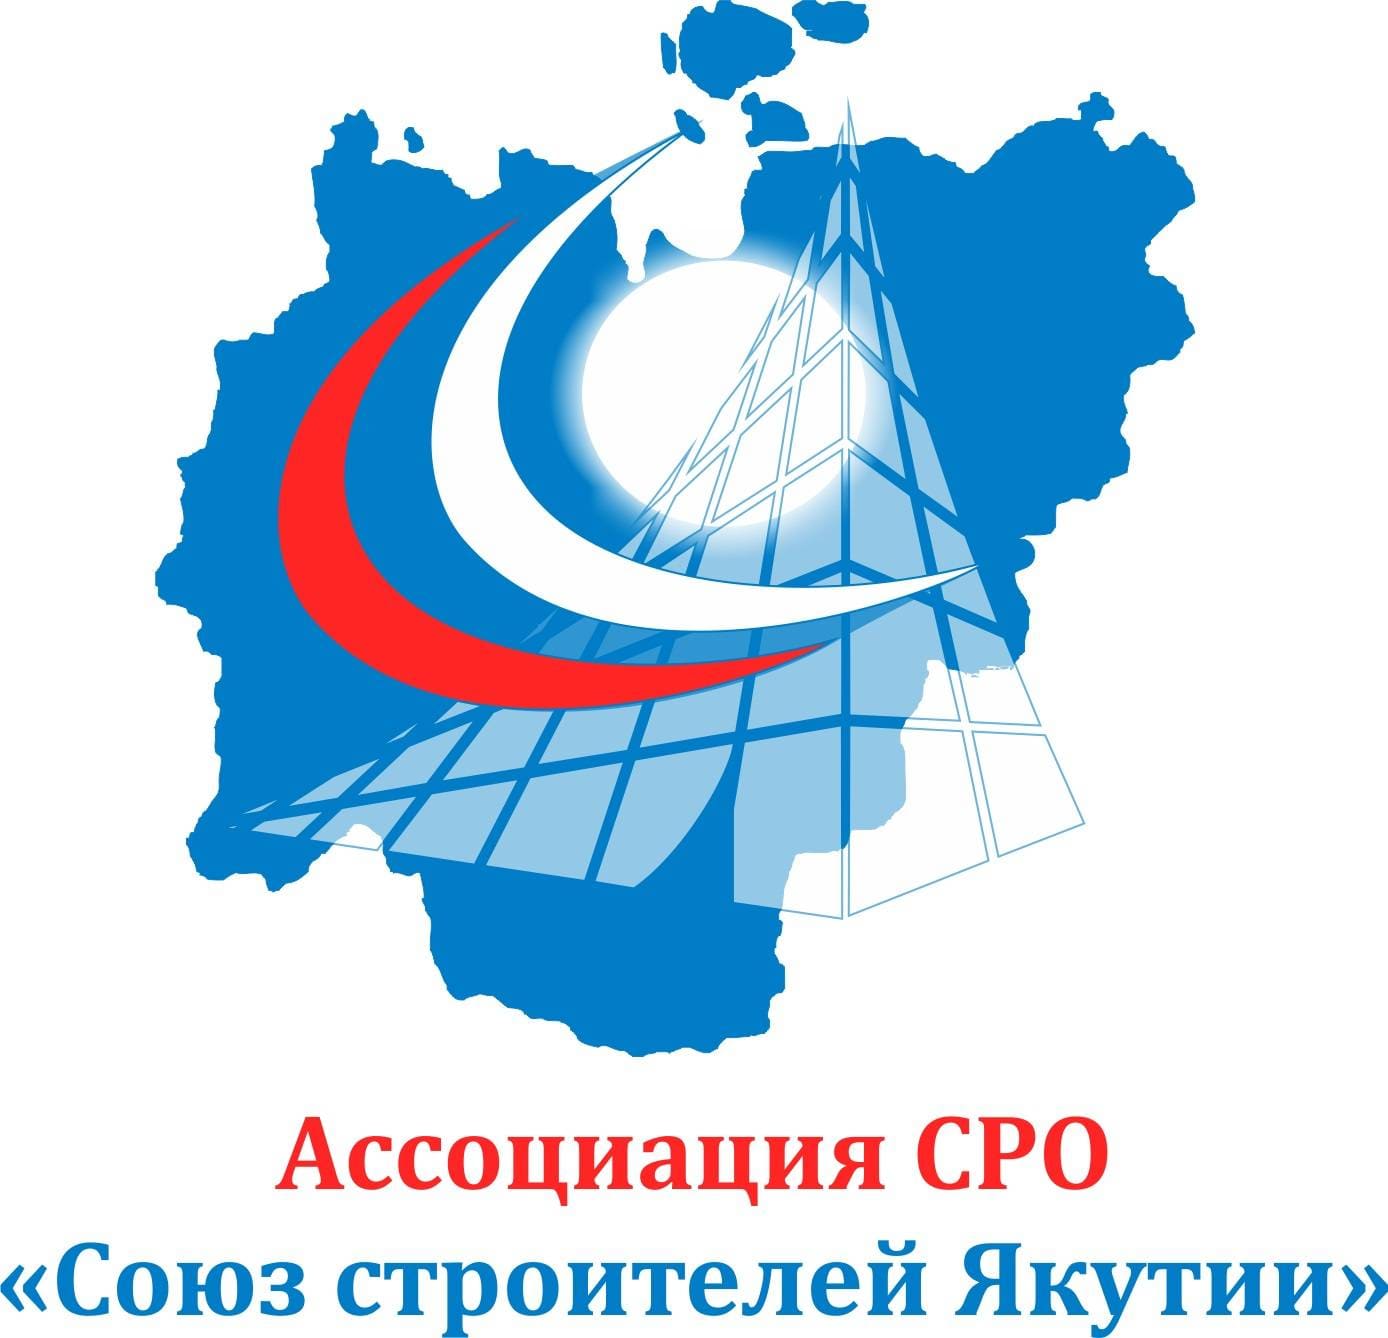 Ассоциация Региональное отраслевое объединение работодателей «Саморегулируемая организация «Союз строителей Якутии»